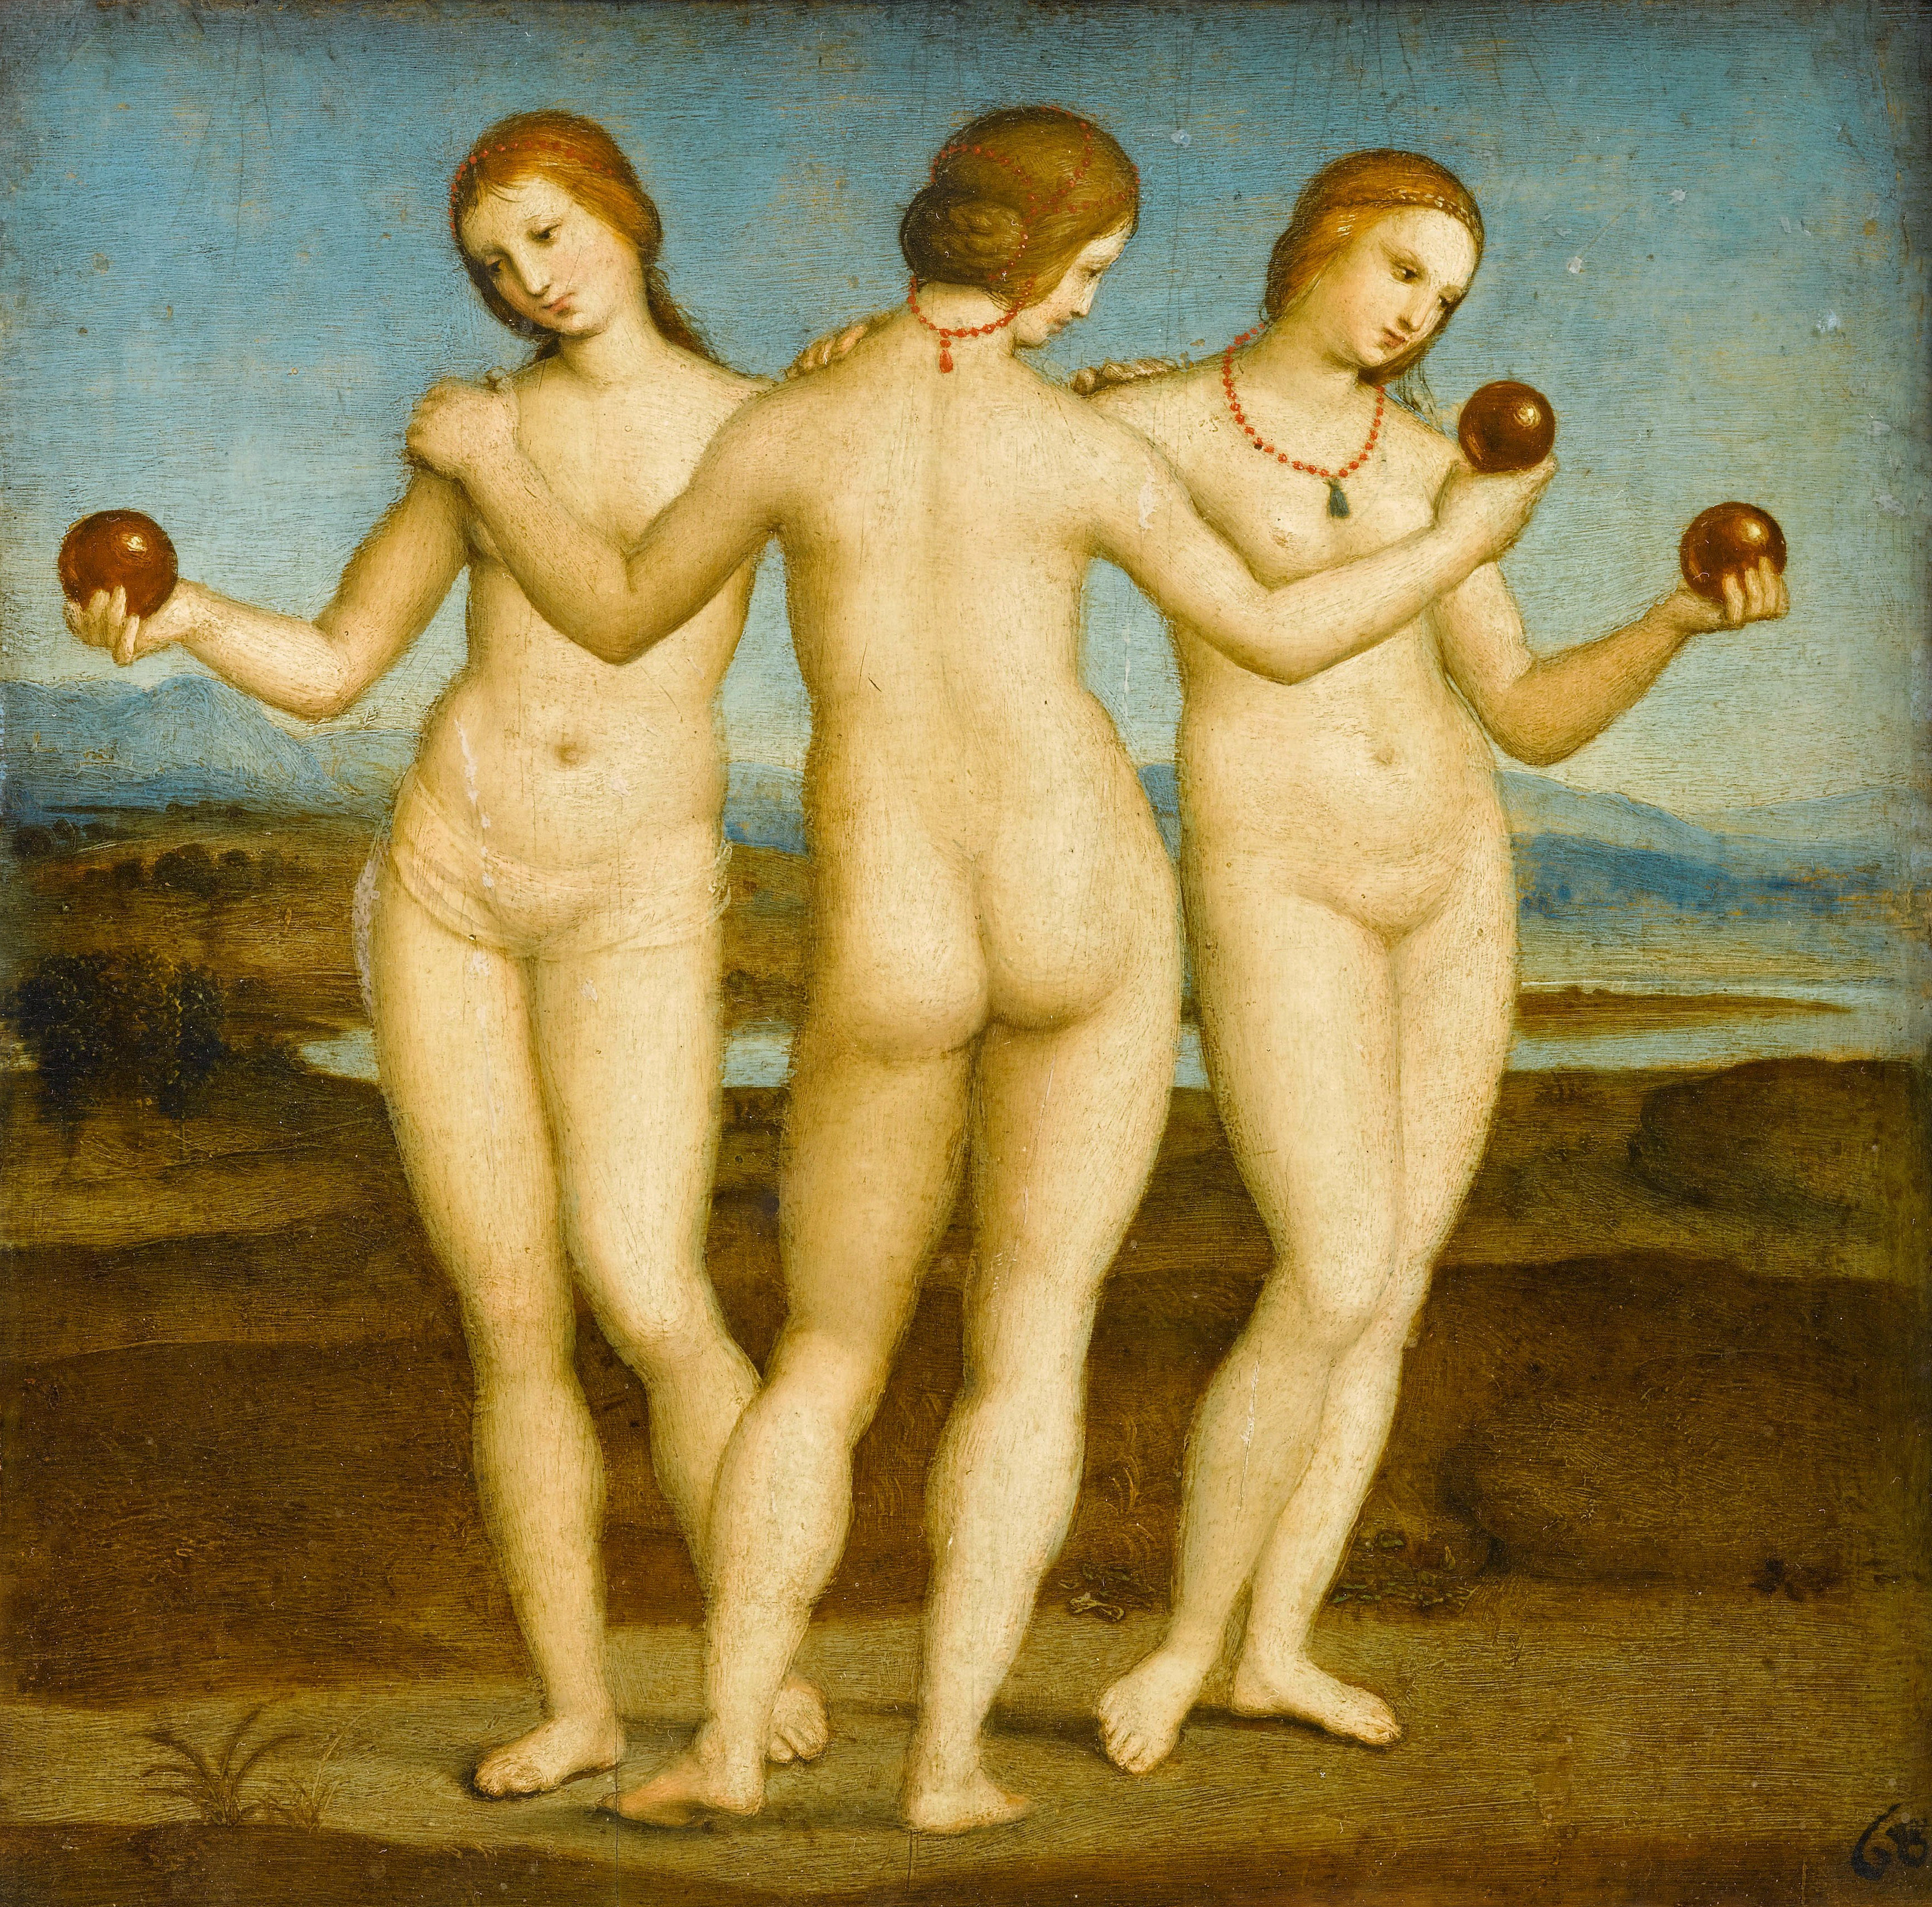 Three Graces by Raphael Santi - 1504–1505 - 17.1 cm × 17.1 cm Musée Condé